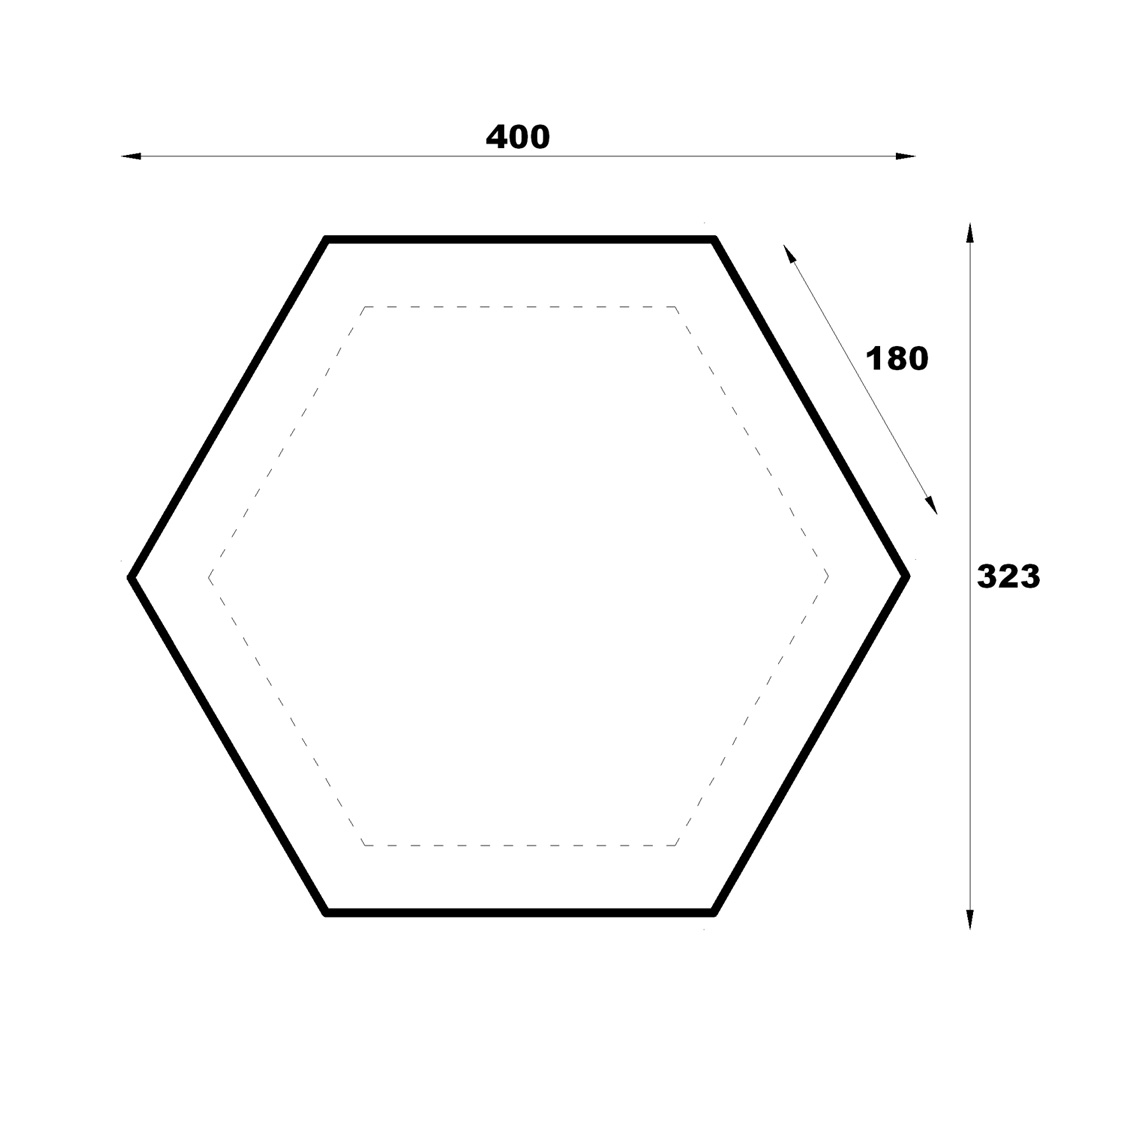 Hexagon Gazebo Plans